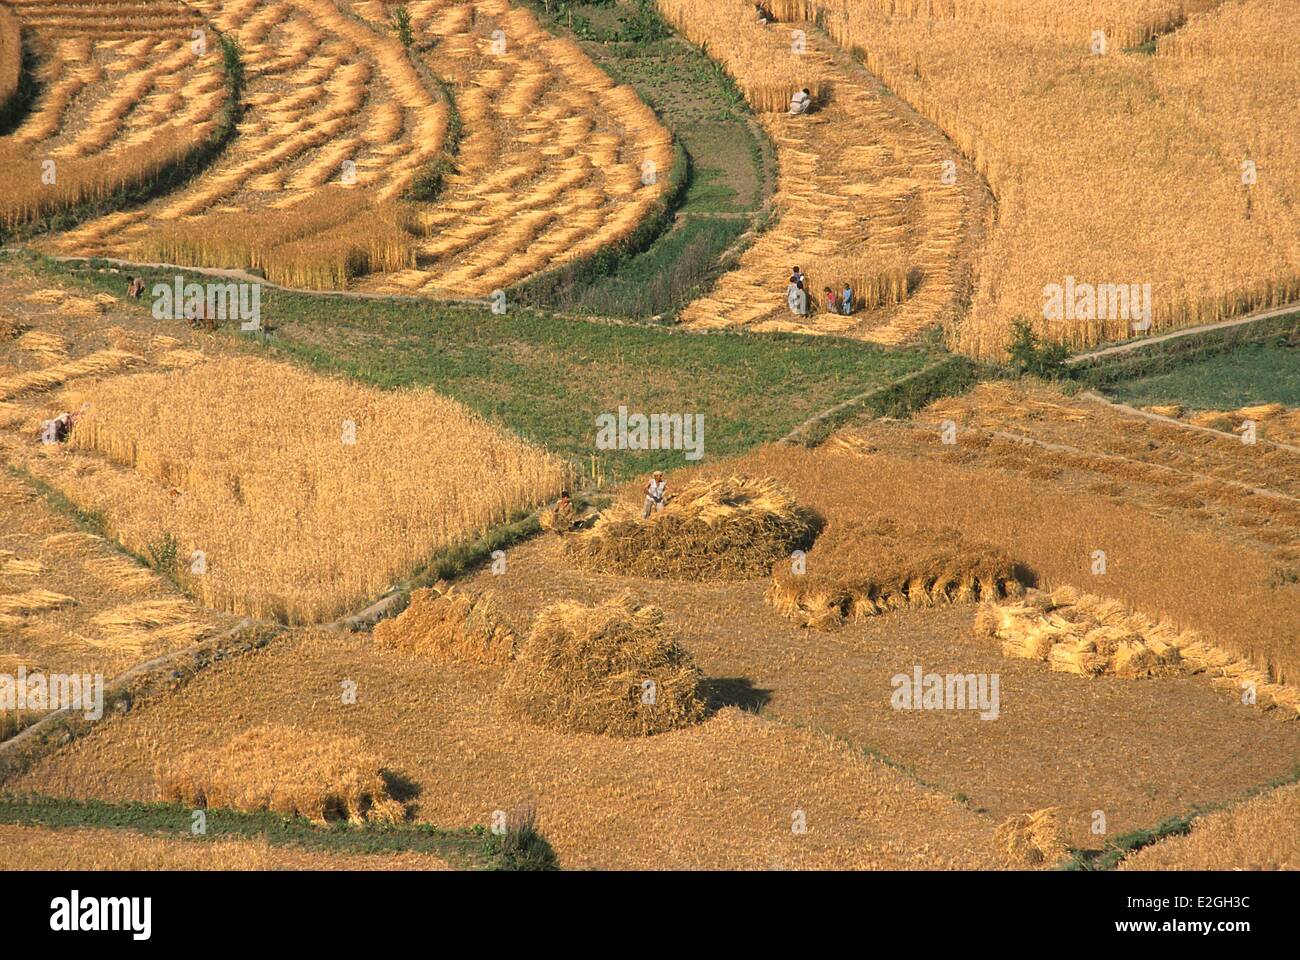 Le district de Chitral du Khyber Pakhtunkhwa au Pakistan en récolte Ayun musulmane dernier village avant d'entrer dans les vallées Kalash étroit de Bumburet et Rumbur (vue aérienne) Banque D'Images